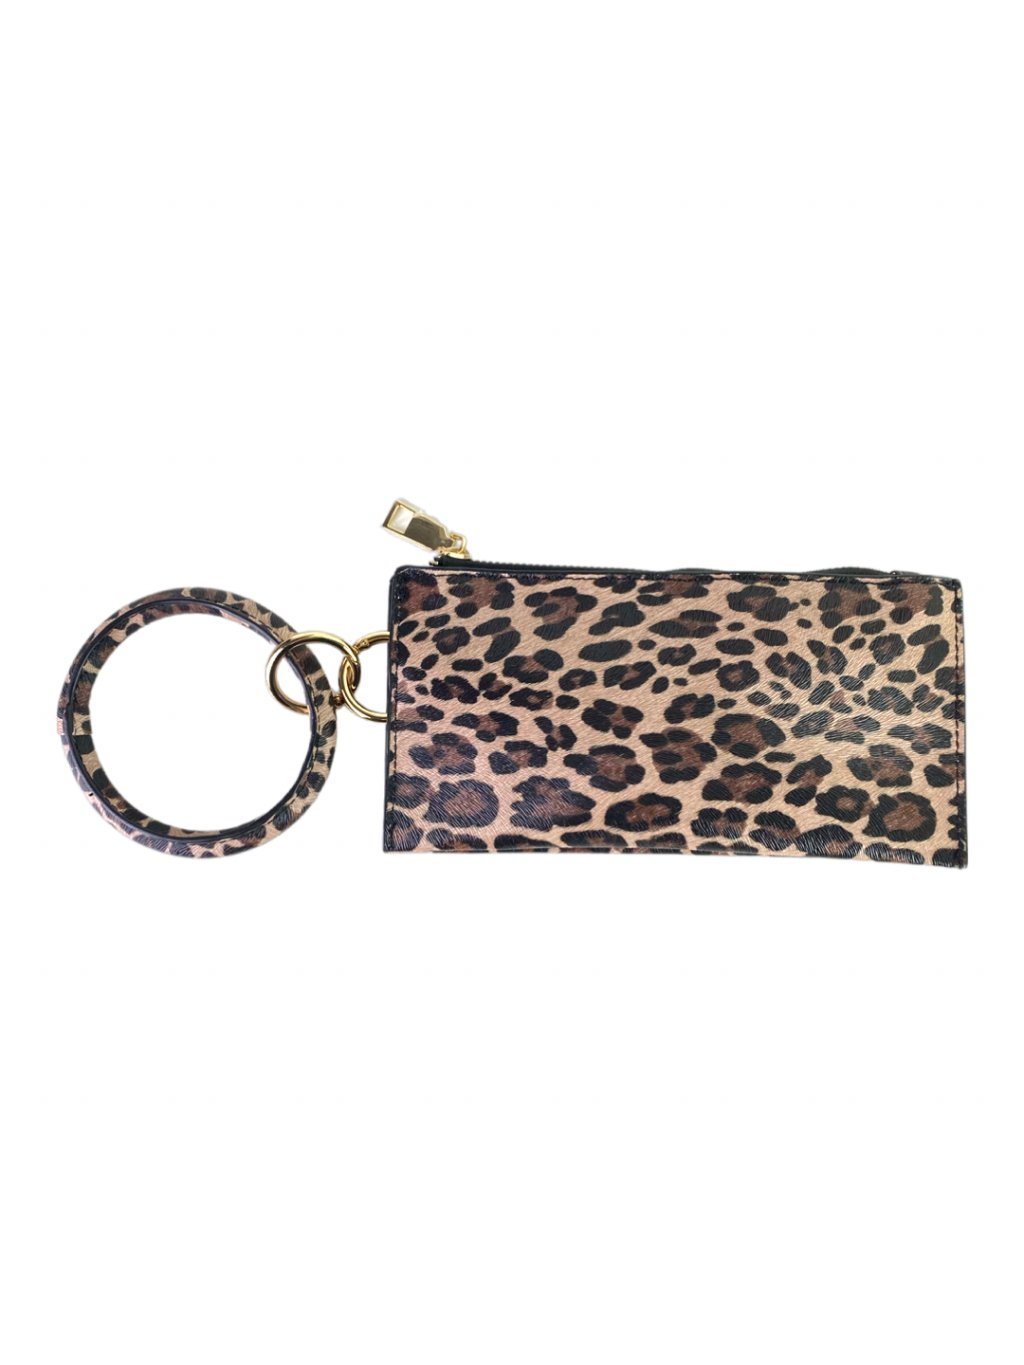 Koženková kapsička s kulatým poutkem SP-8252 - leopardí